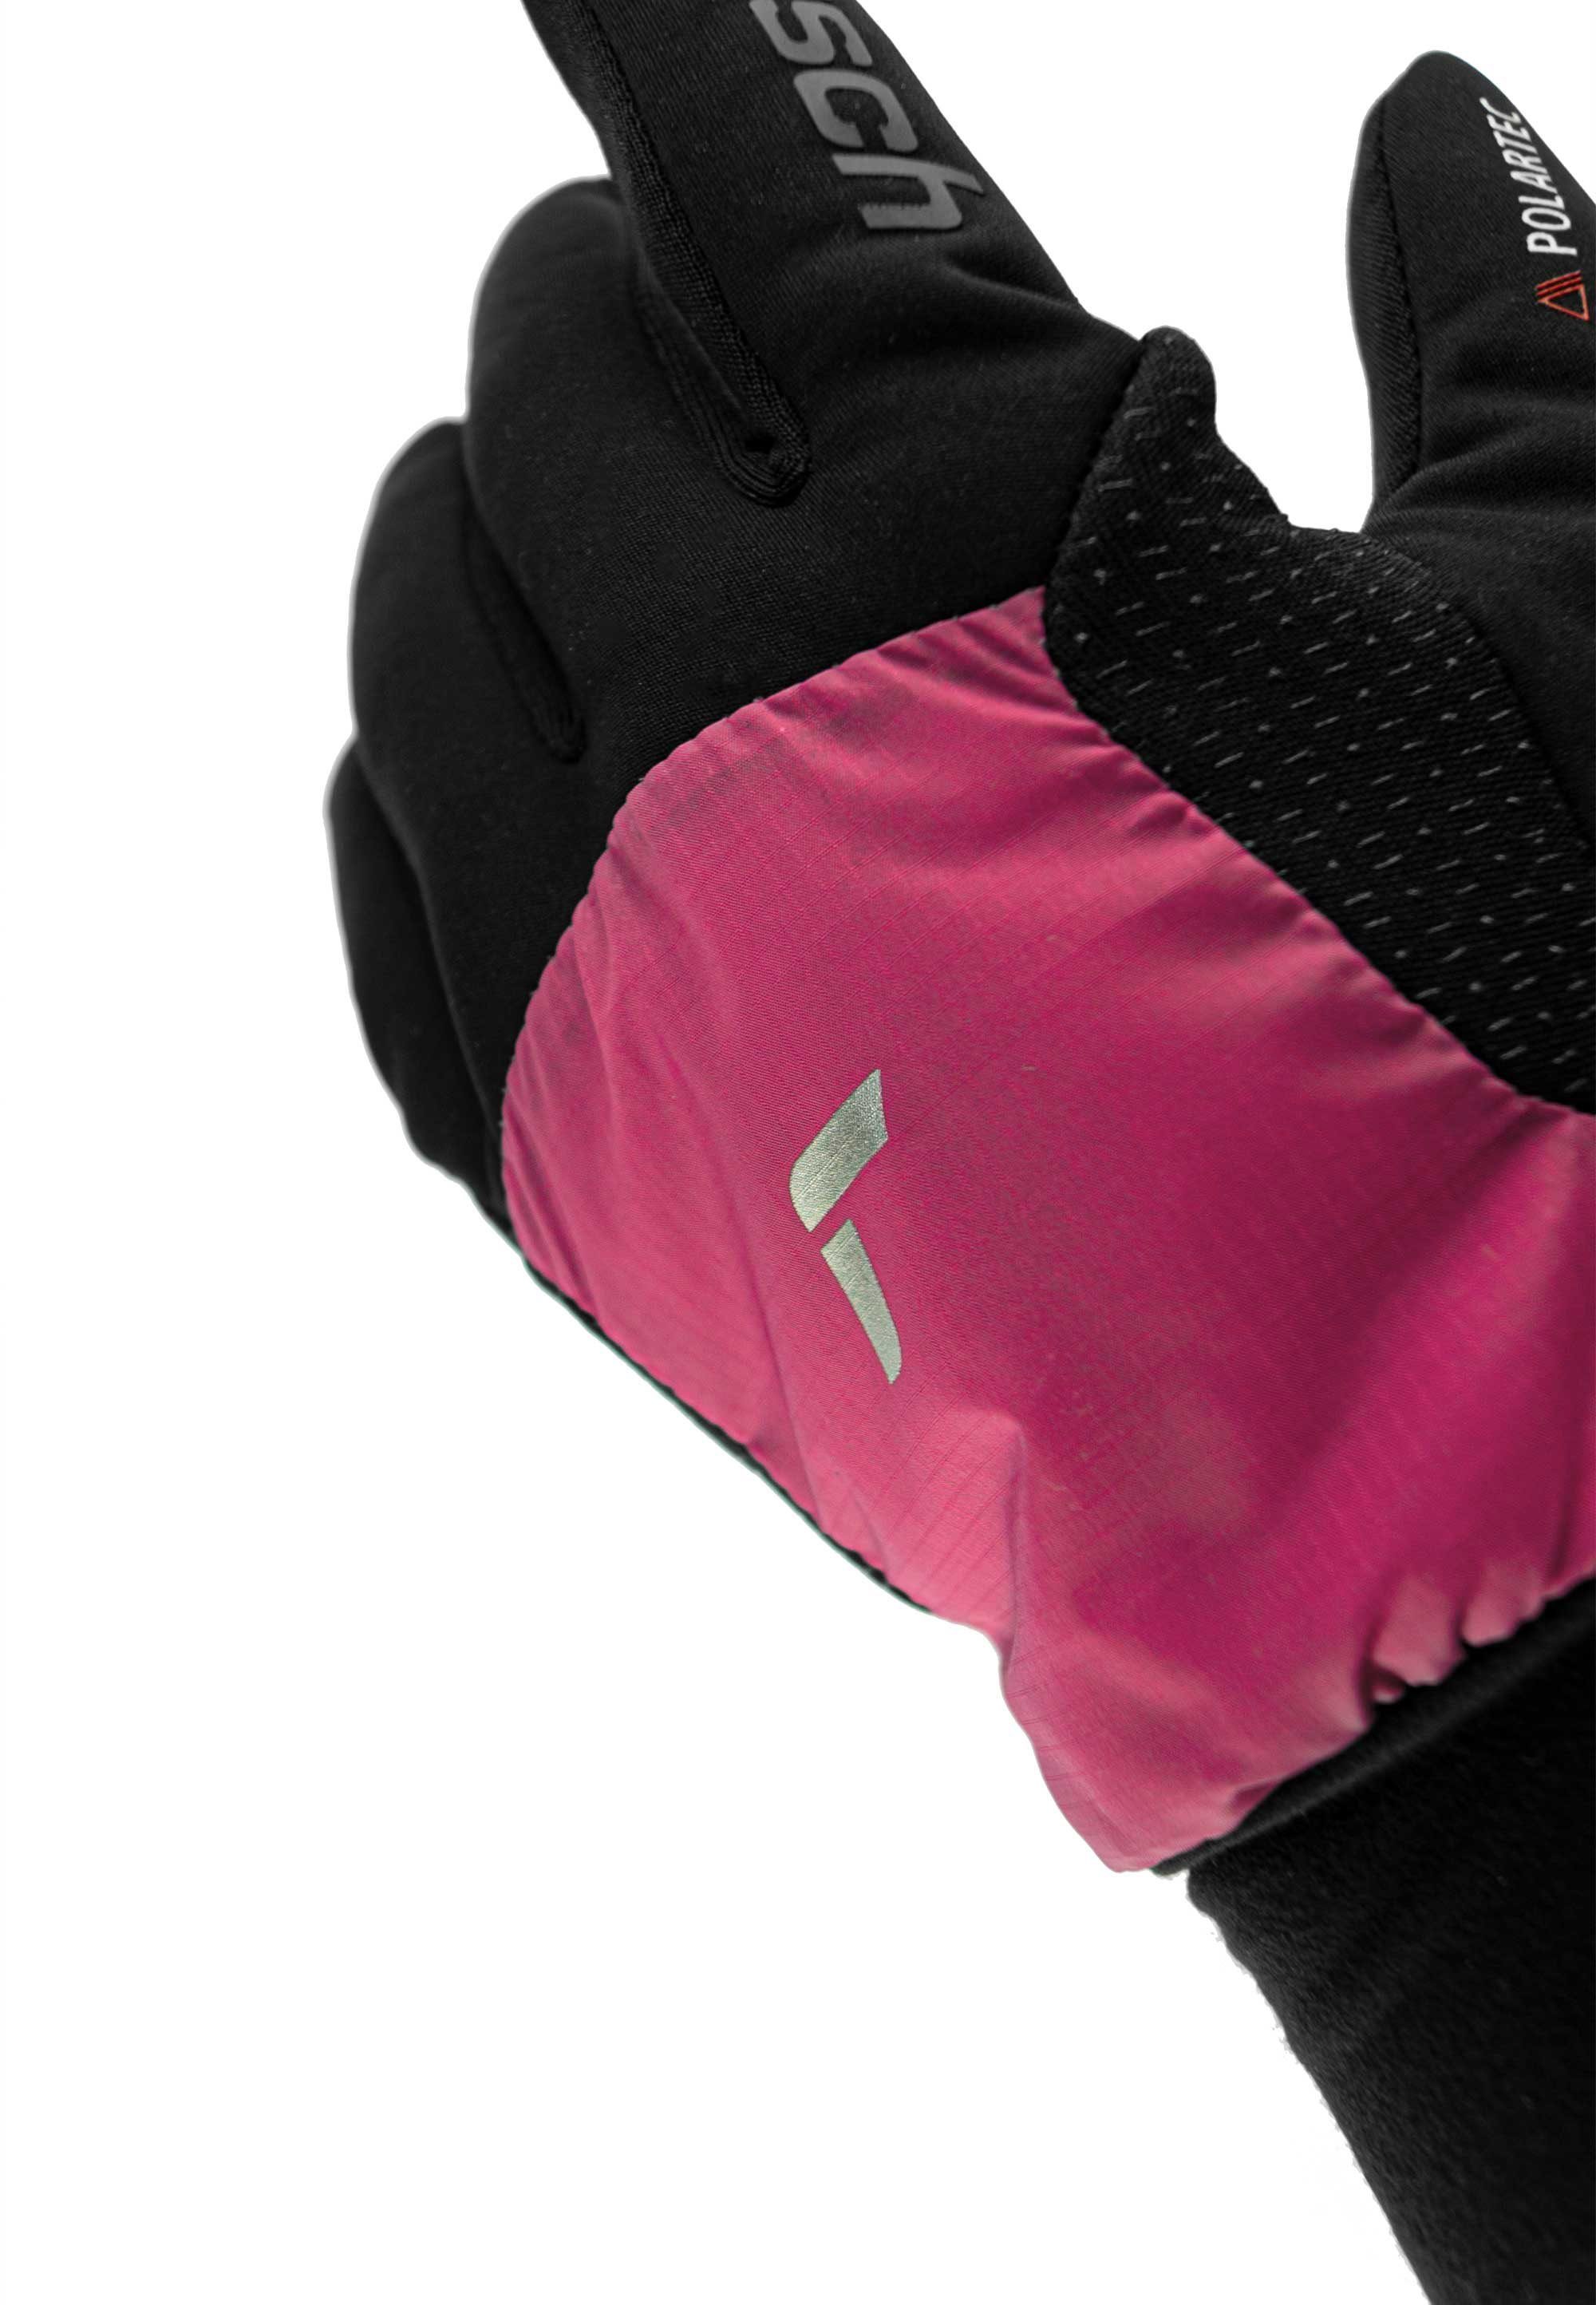 mit Garhwal Touchscreen-Funktion schwarz-pink praktischer Reusch Hybrid Skihandschuhe